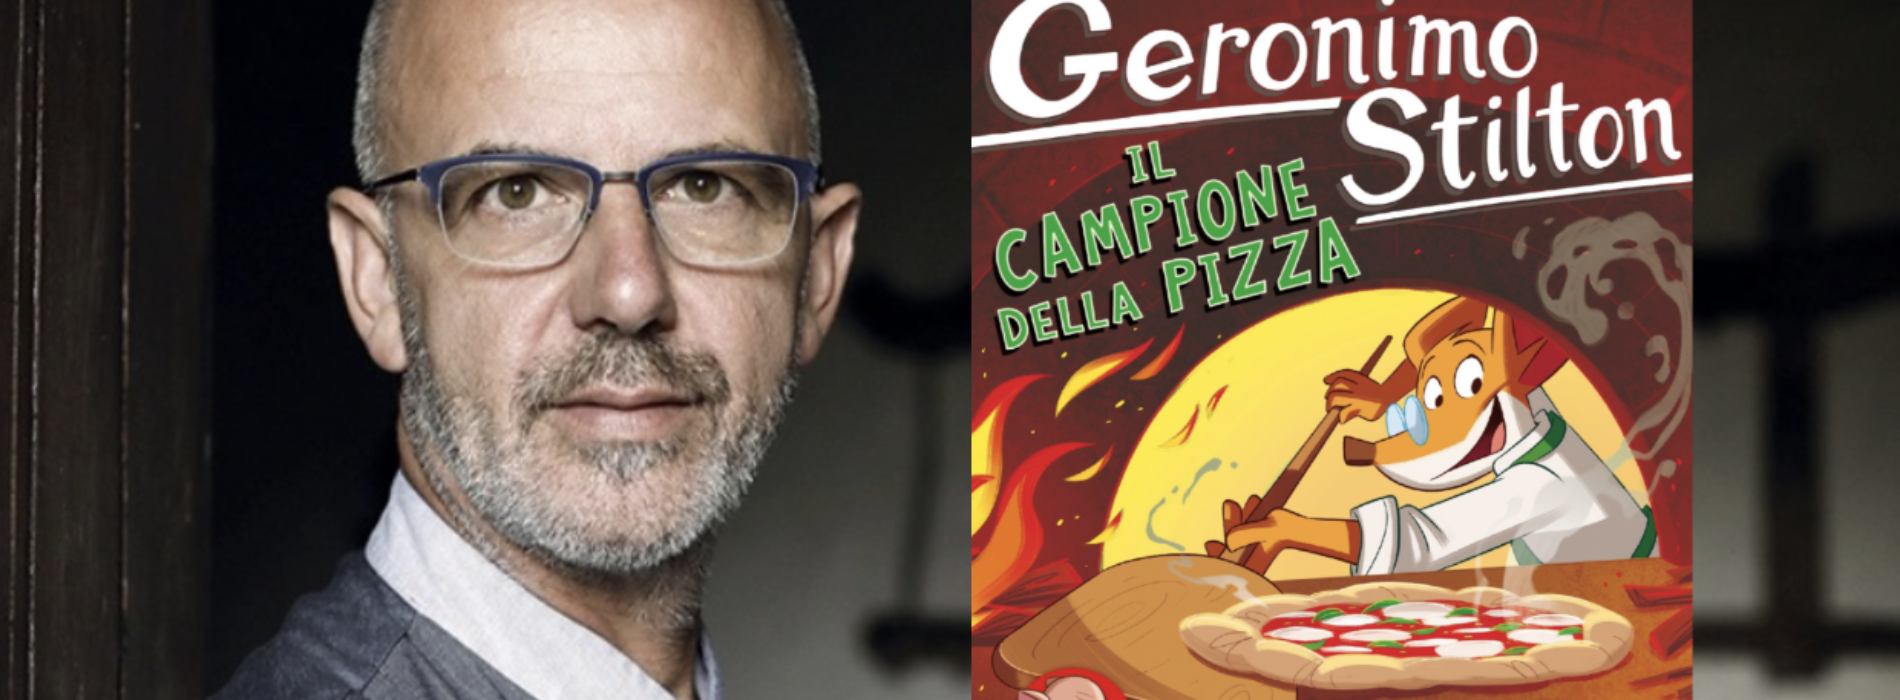 Franco Pepe è campione della pizza, lo dice Geronimo Stilton